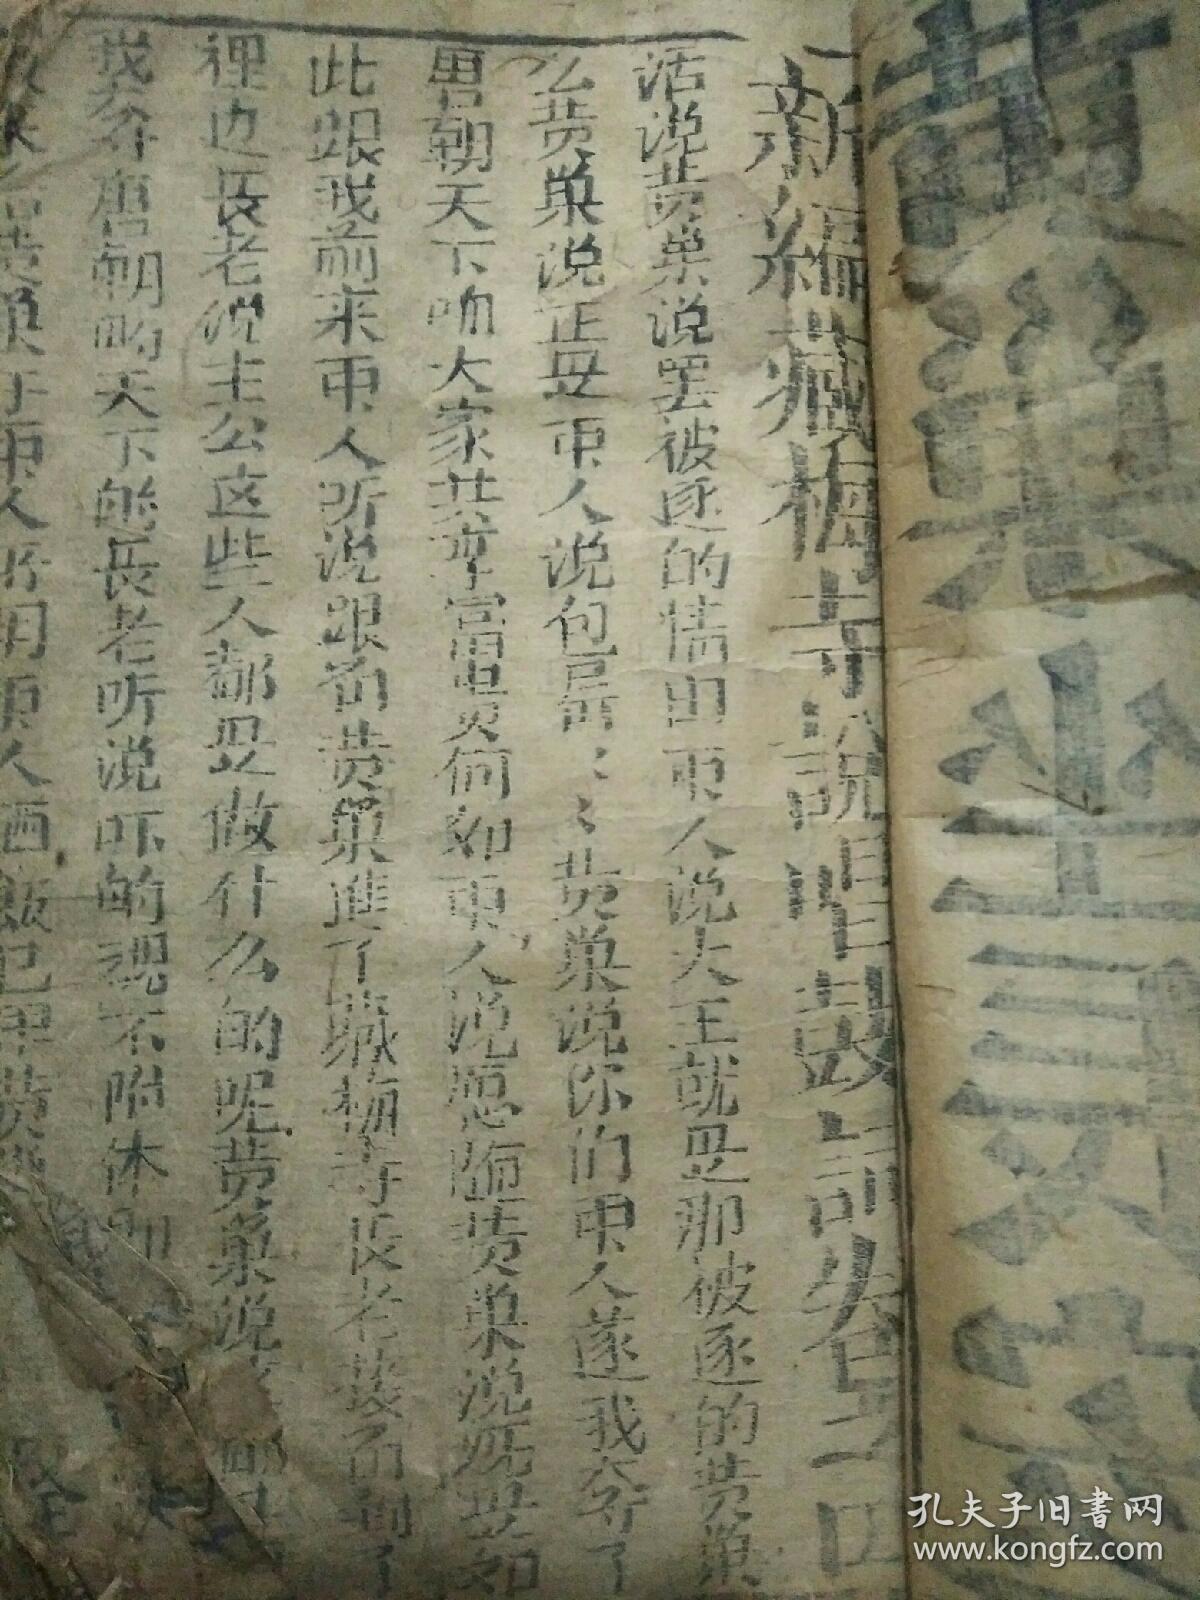 清代新藏梅寺说唱鼓词1-4卷有残缺。